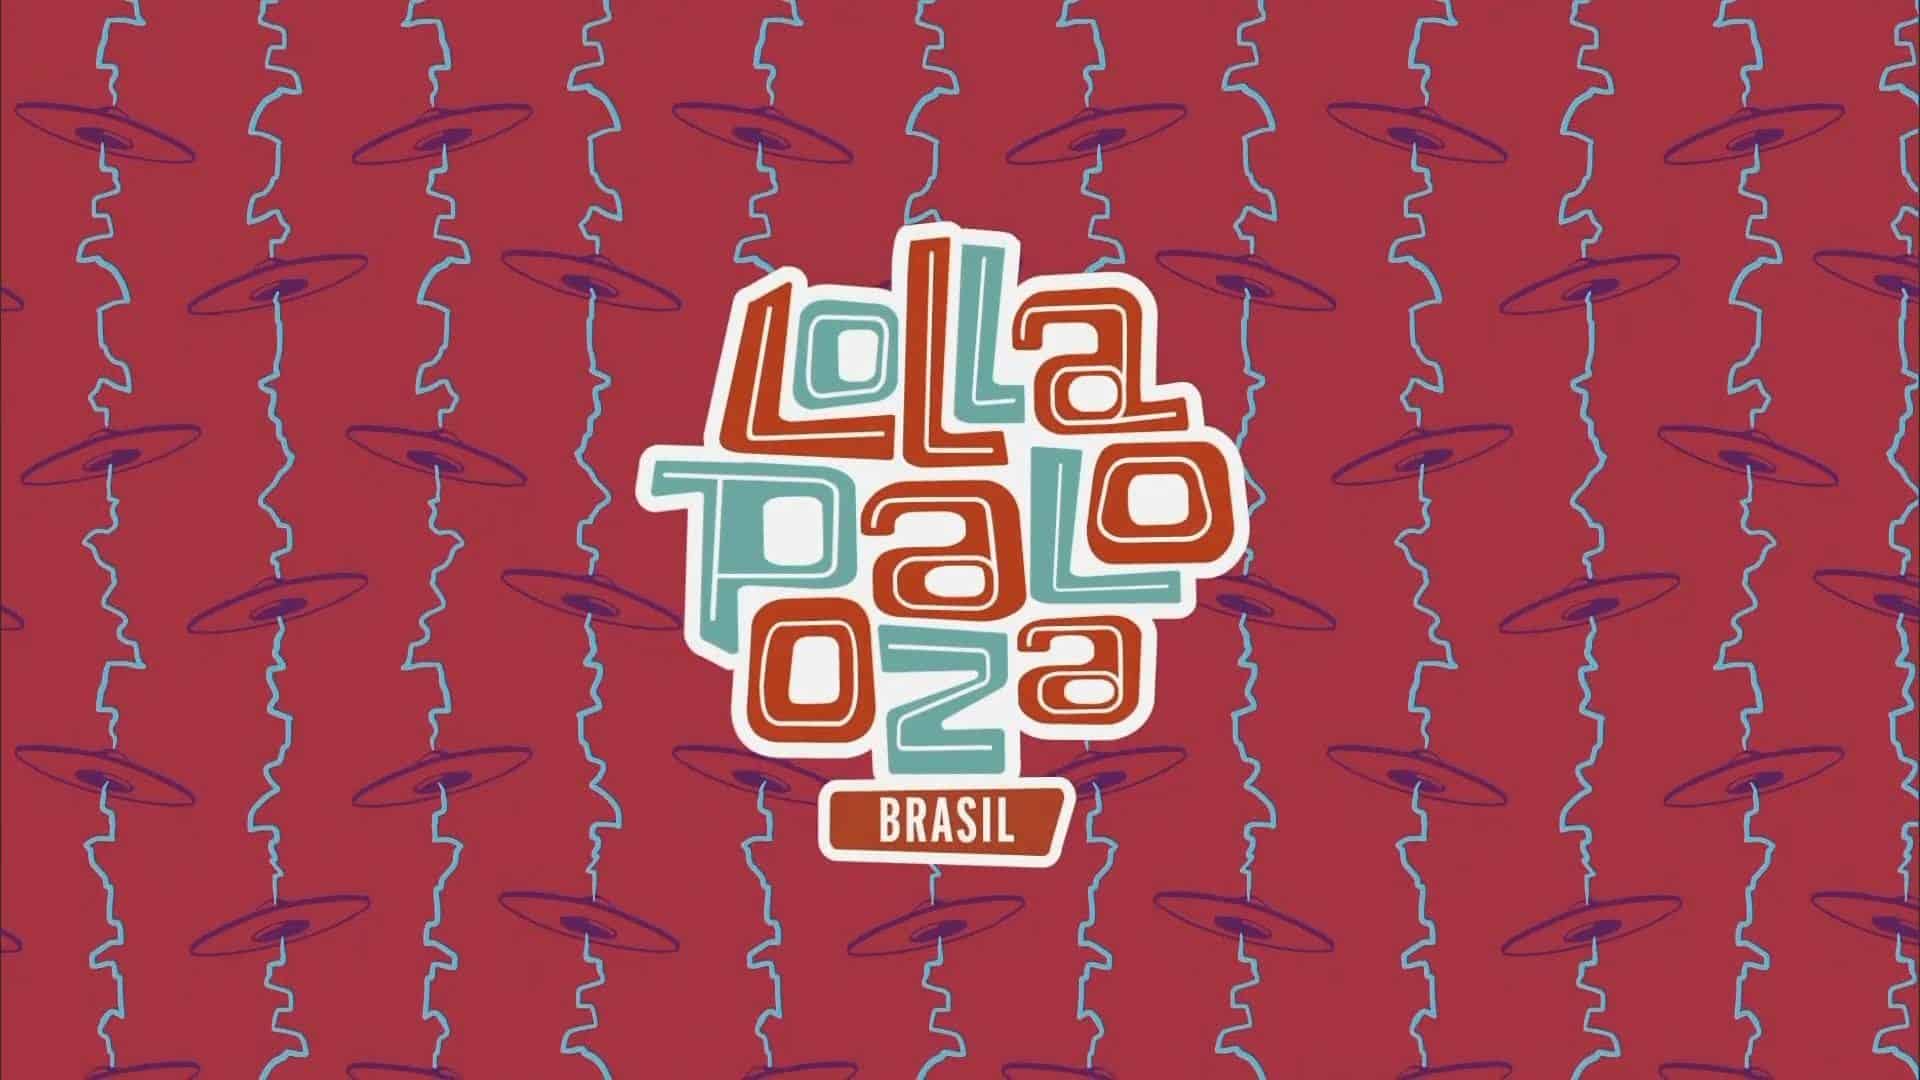 Globo reserva madrugadas de março para exibir o “Lollapalooza 2018”